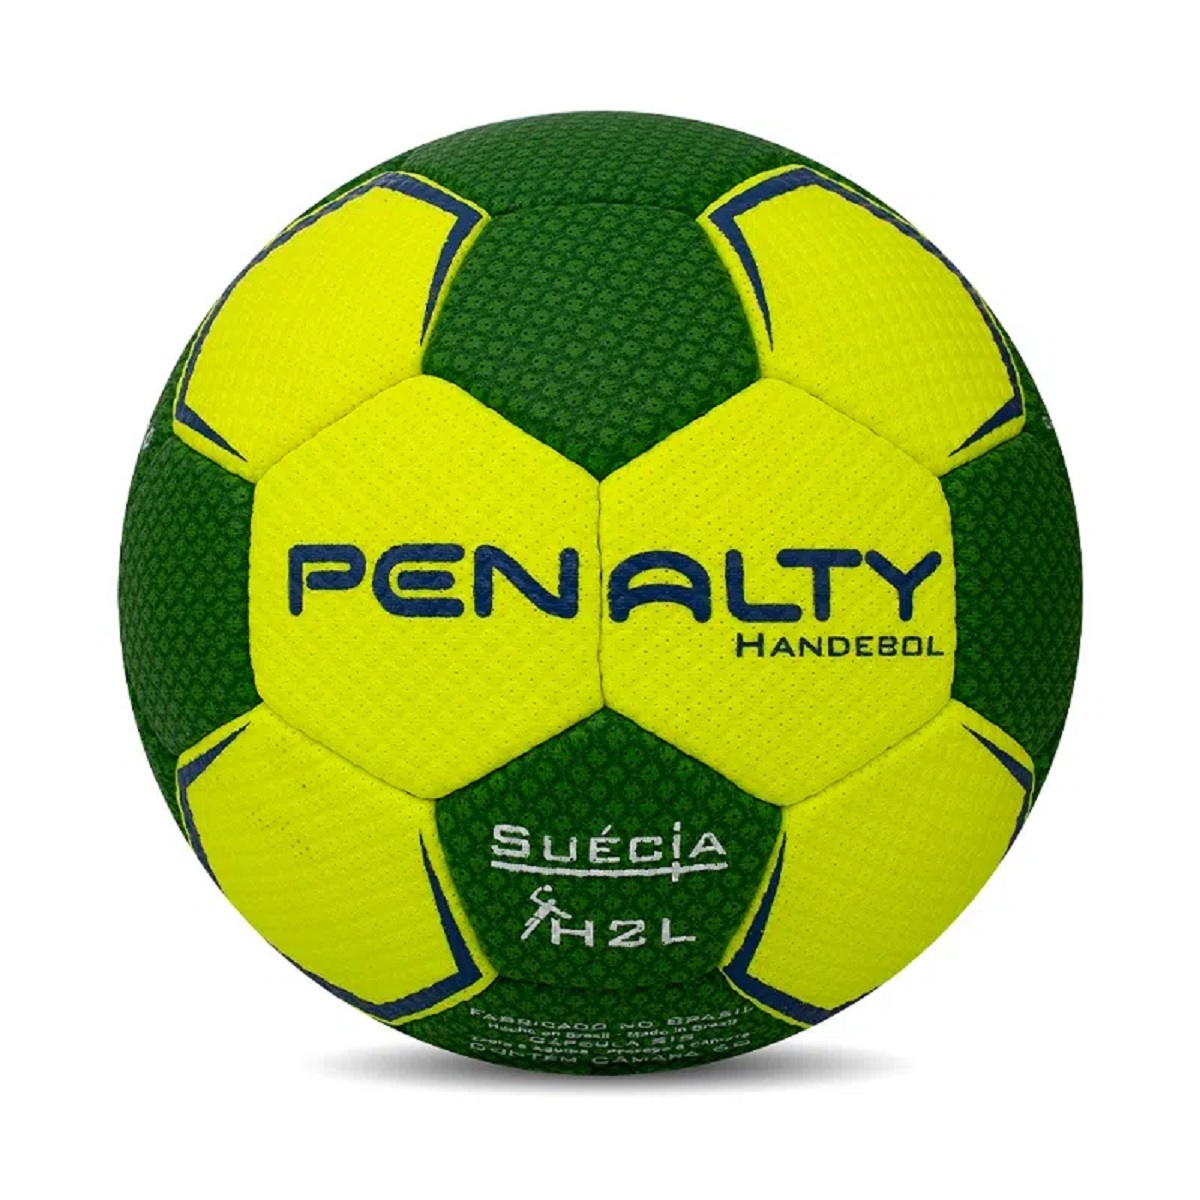 Bola Penalty Handebol Suecia H2L Ultra Grip X Ref 5115615300